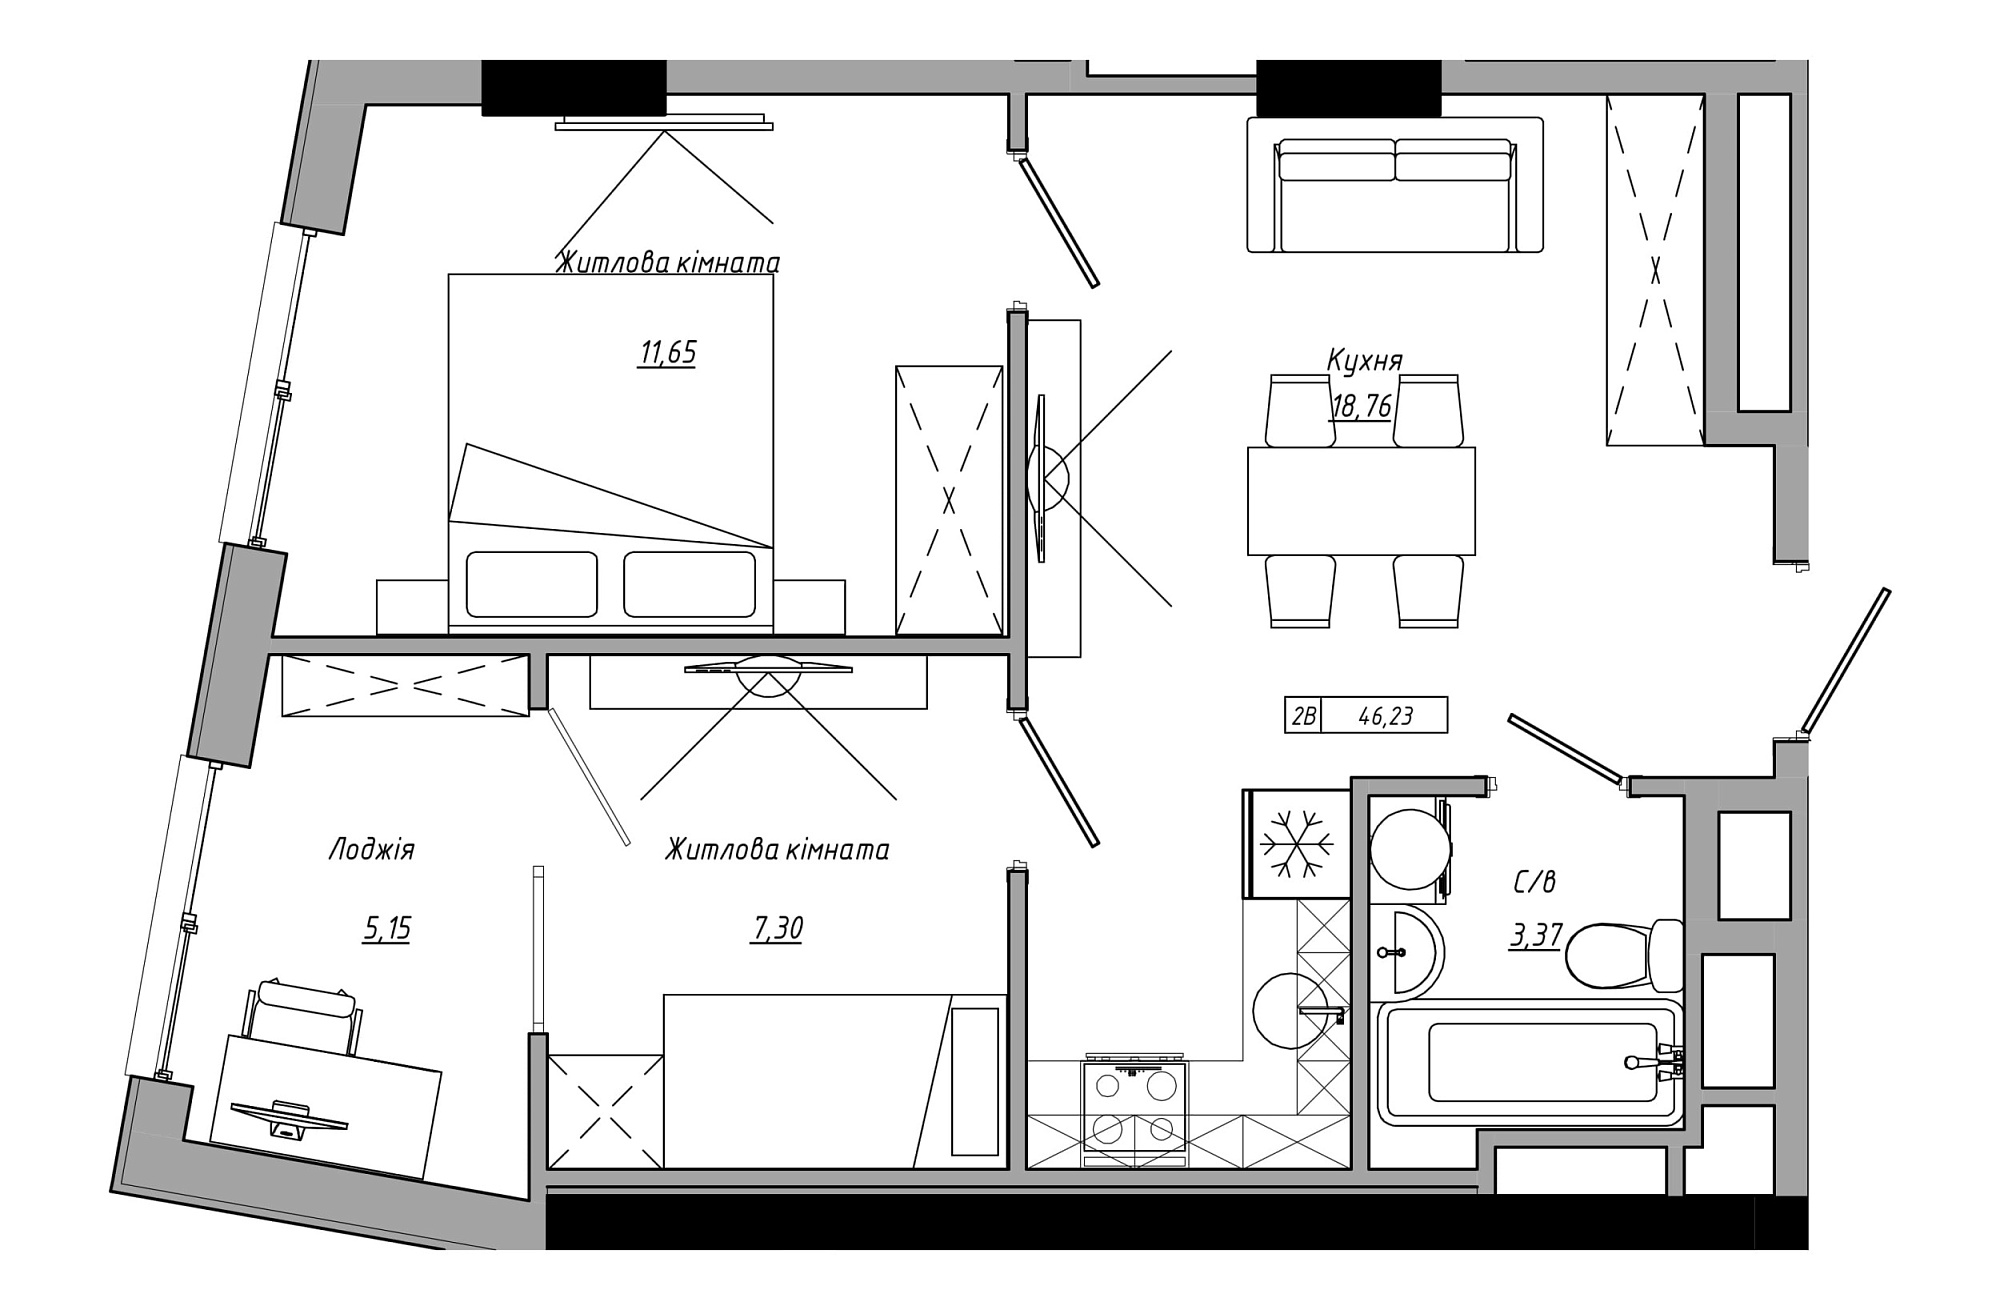 Планування 2-к квартира площею 46.23м2, AB-21-05/00008.